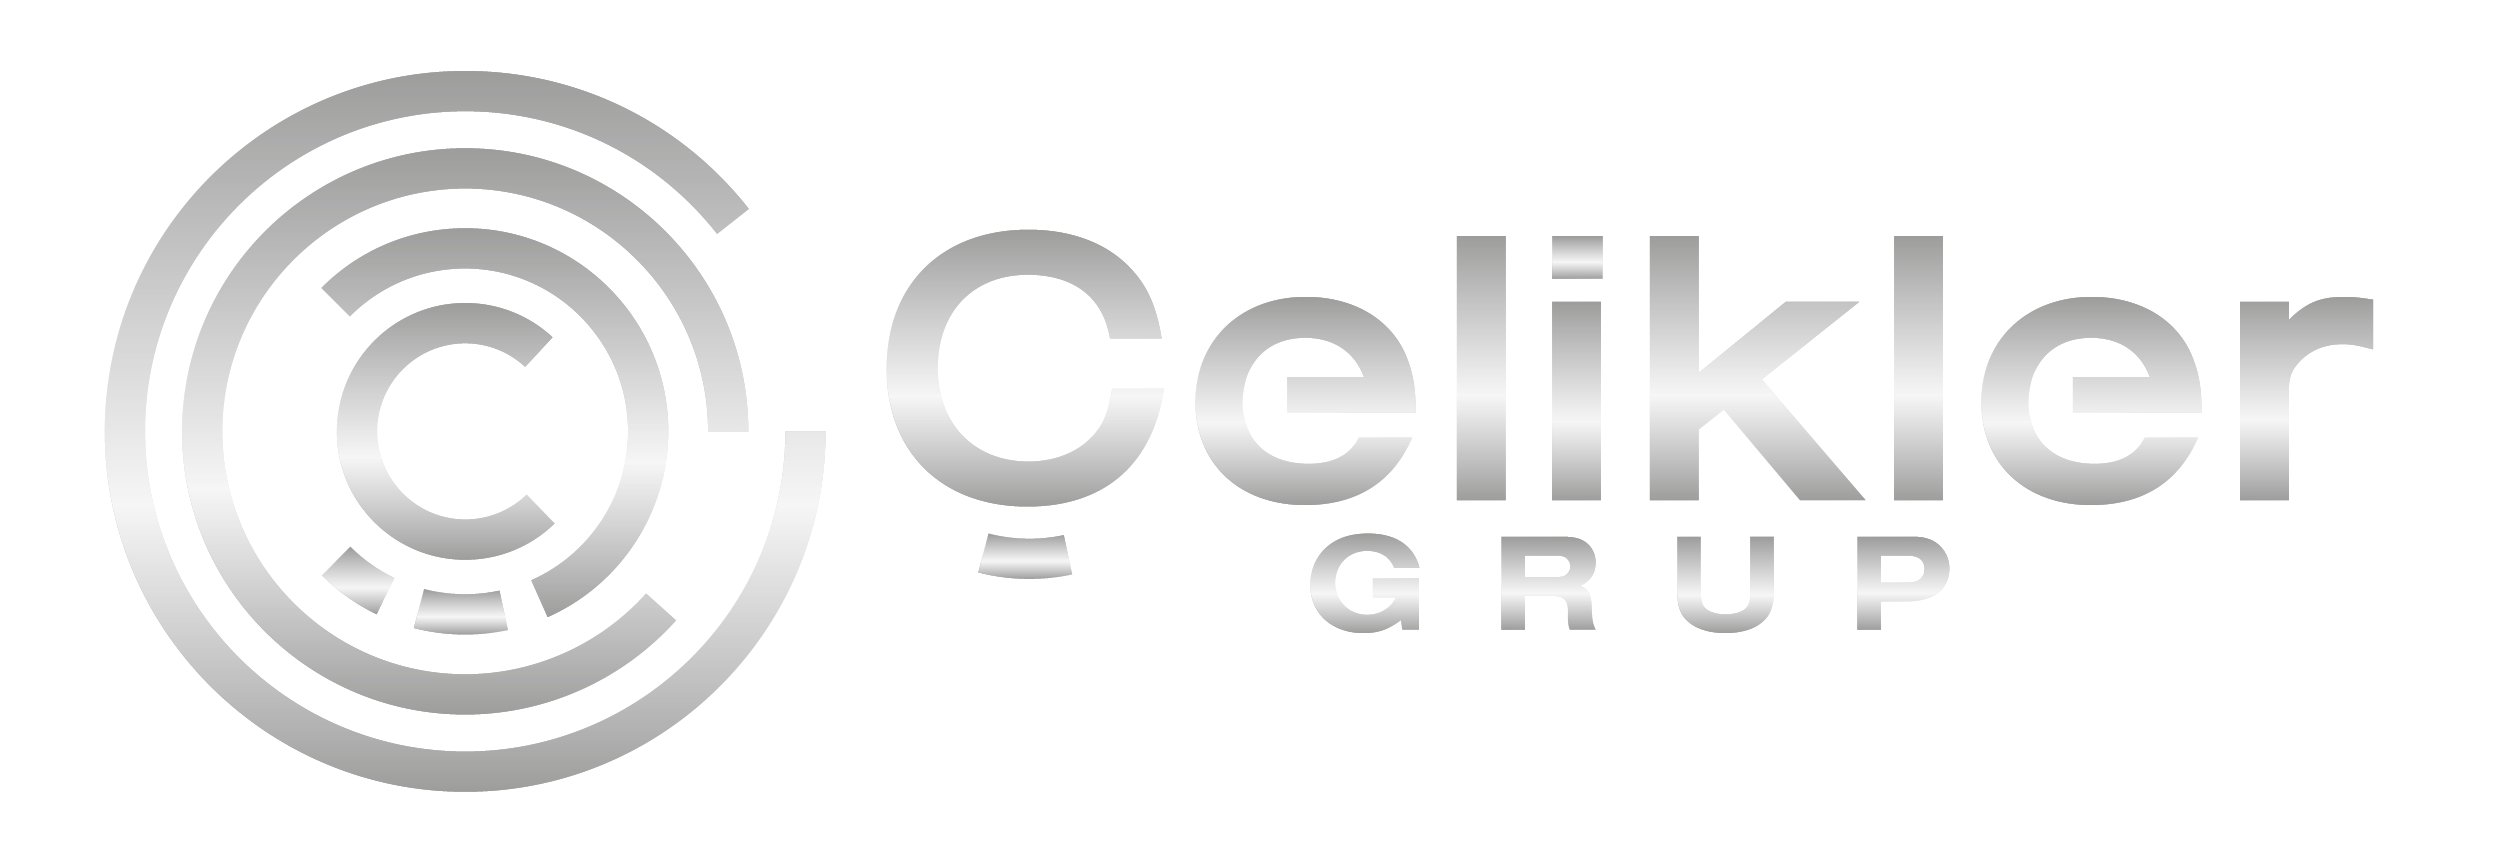 celikler_grup-gumus-02